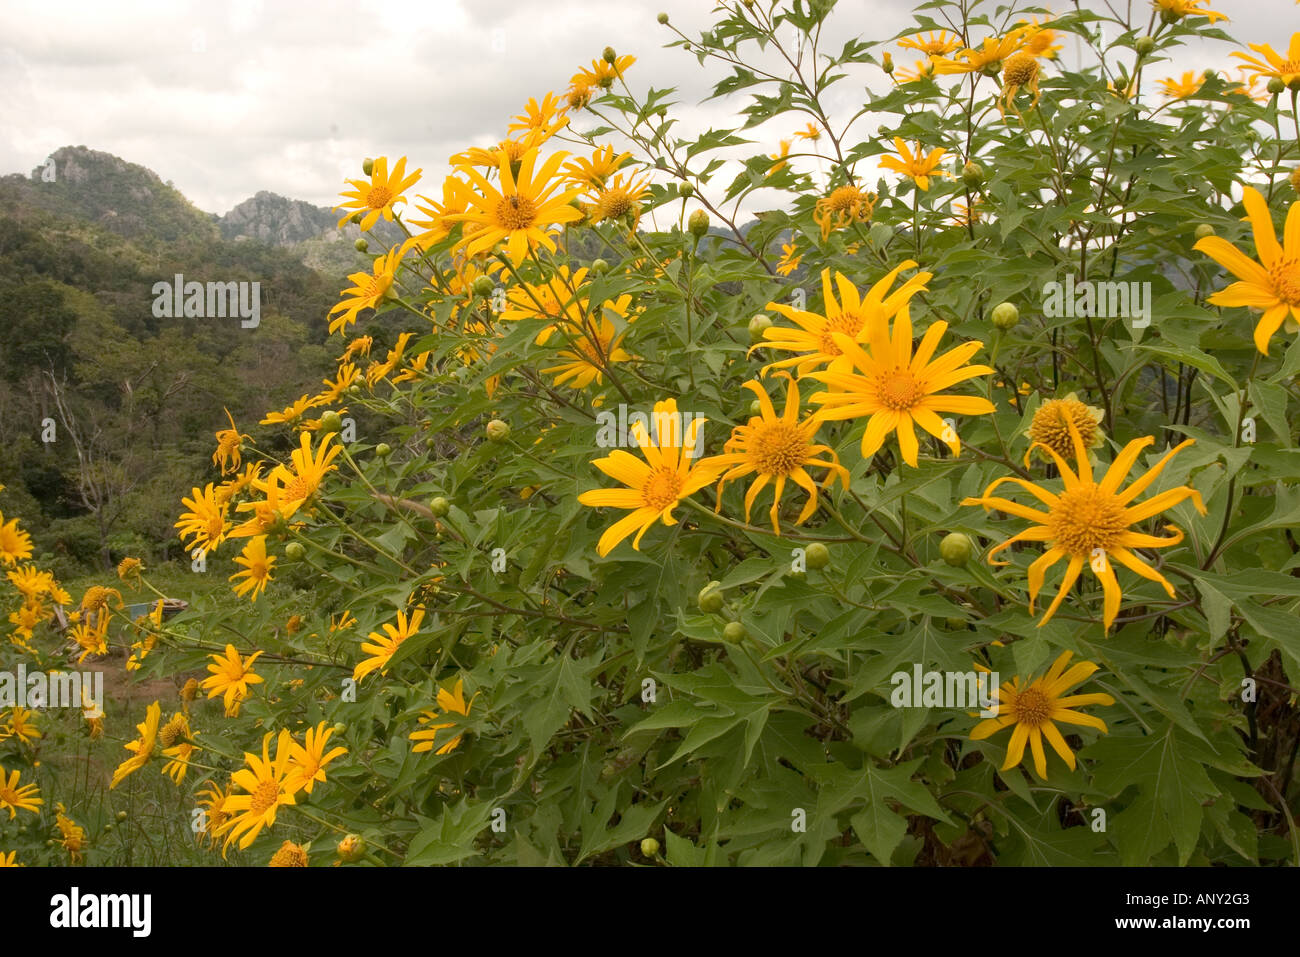 Asia, Thailand, Mexican Sunflower (Tithonia Diversifolia) Stock Photo